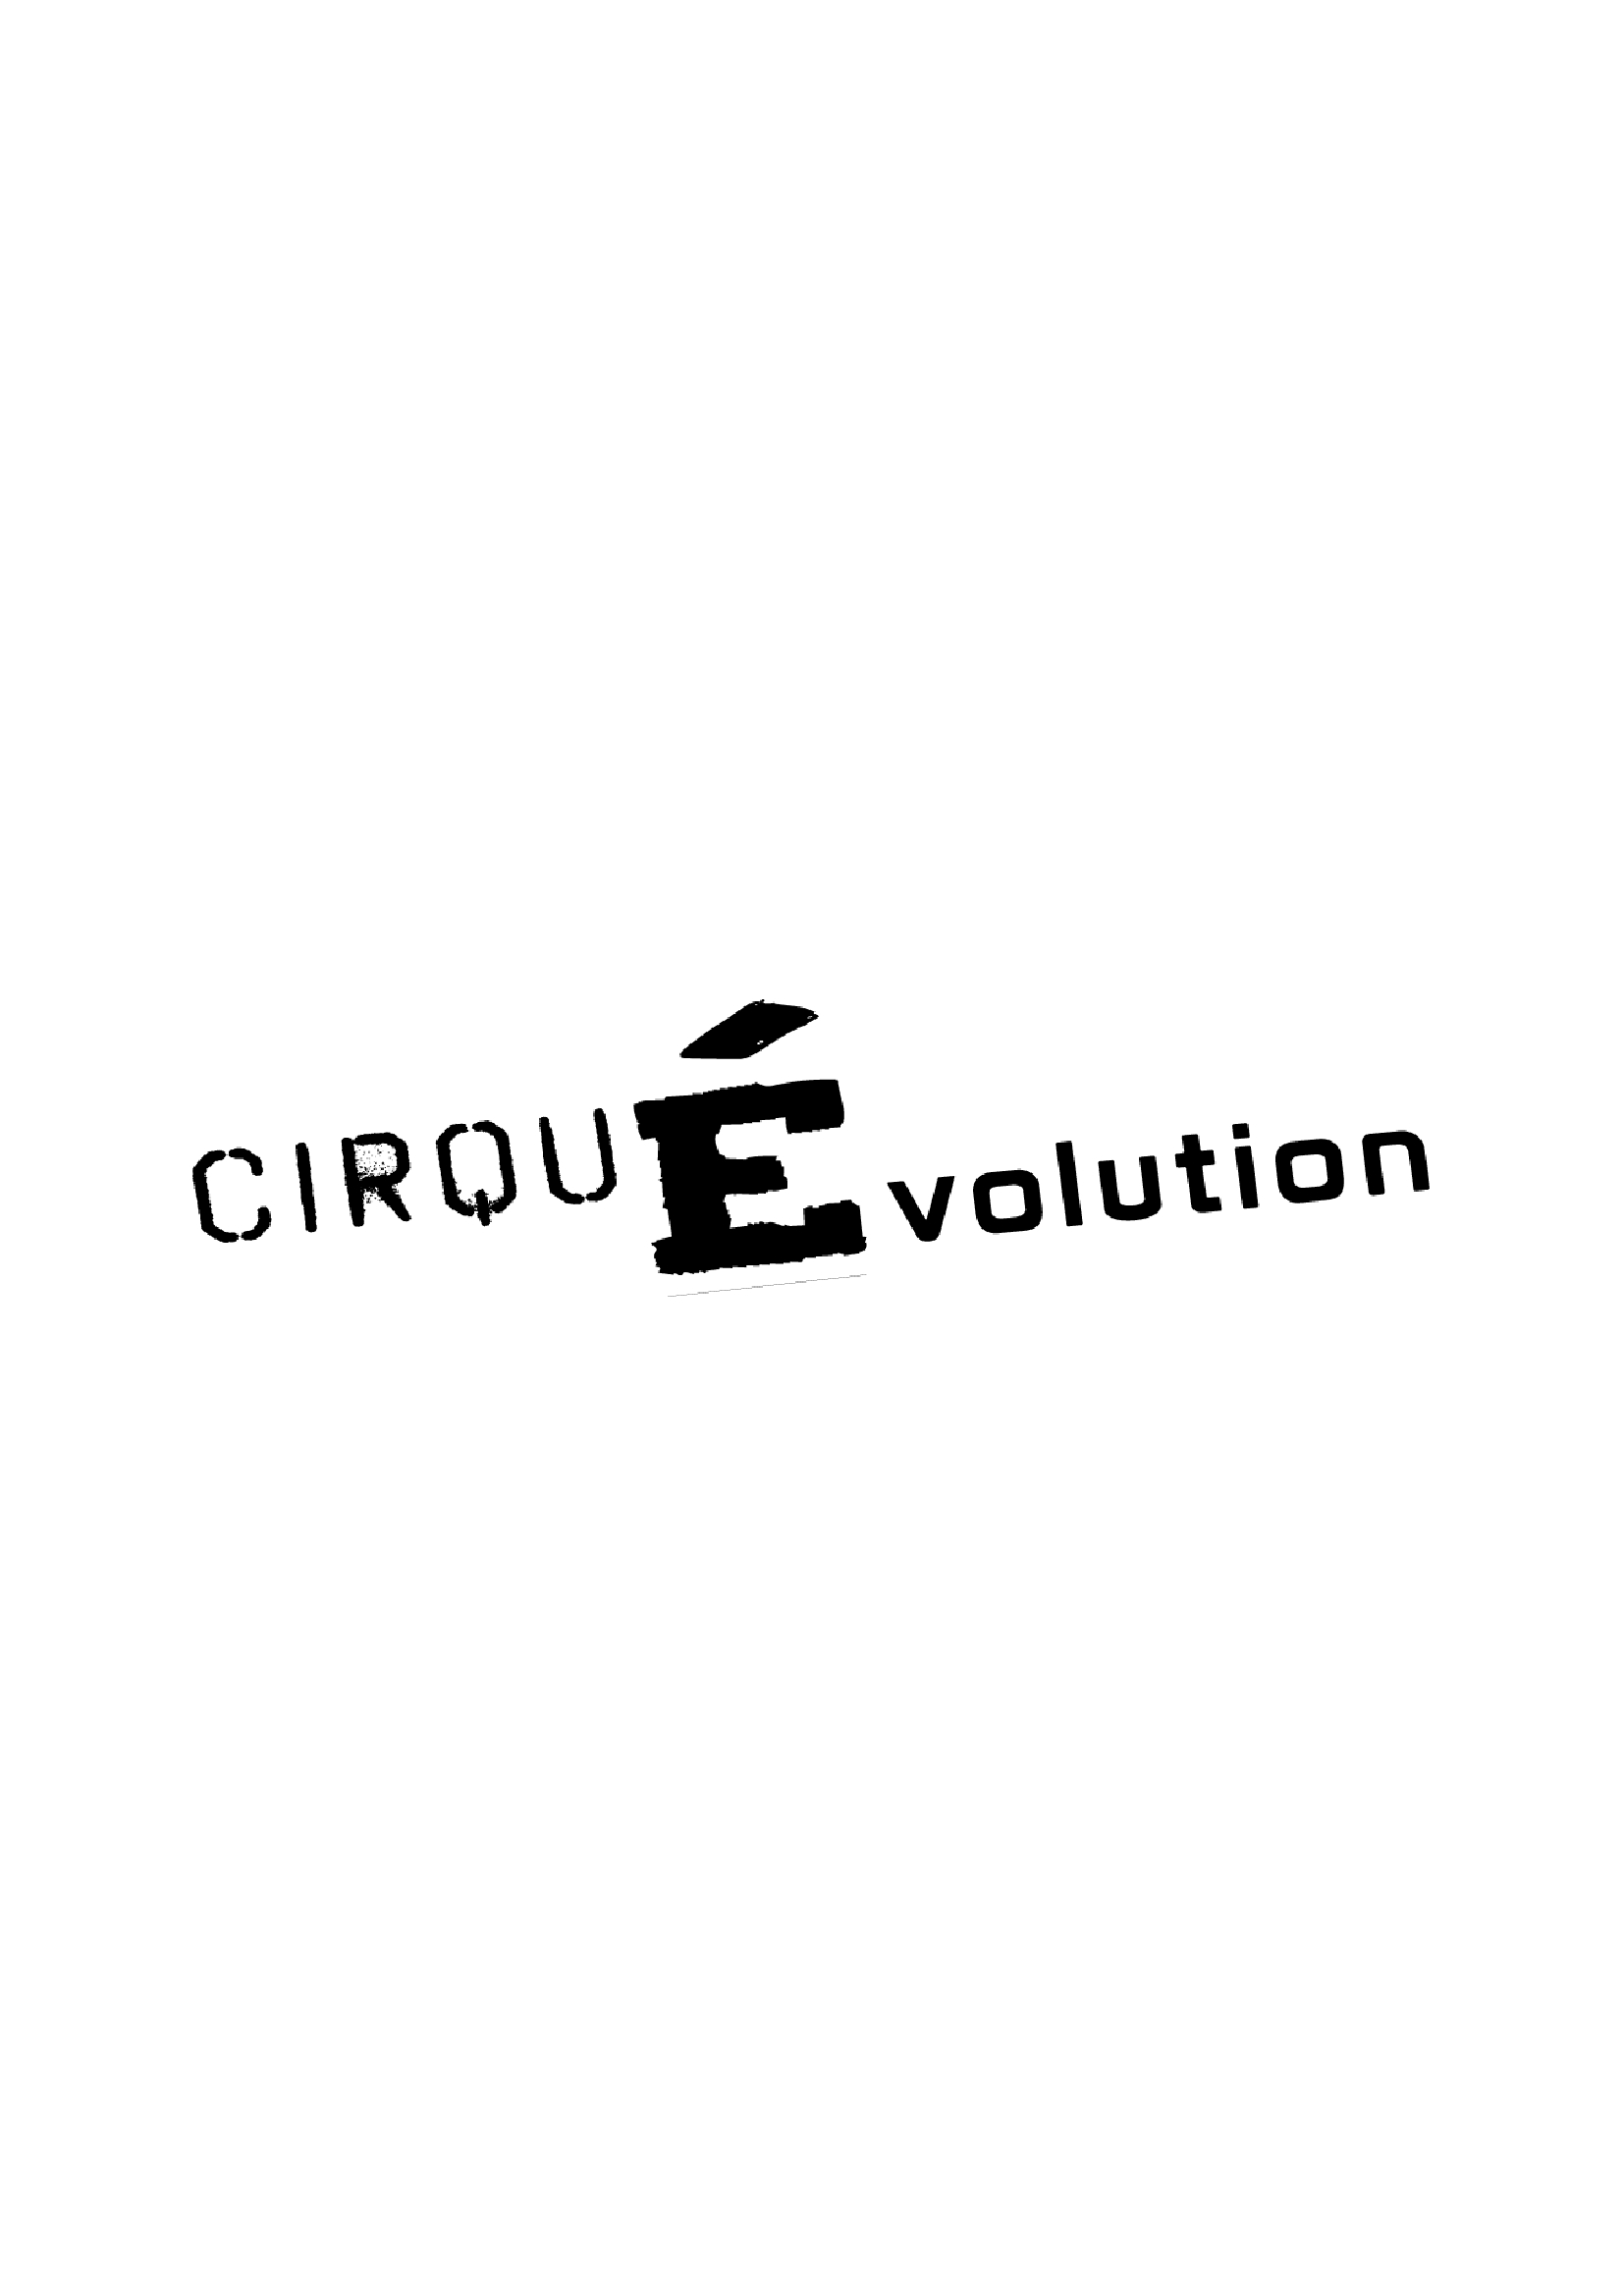 cirquevolution-logo-w